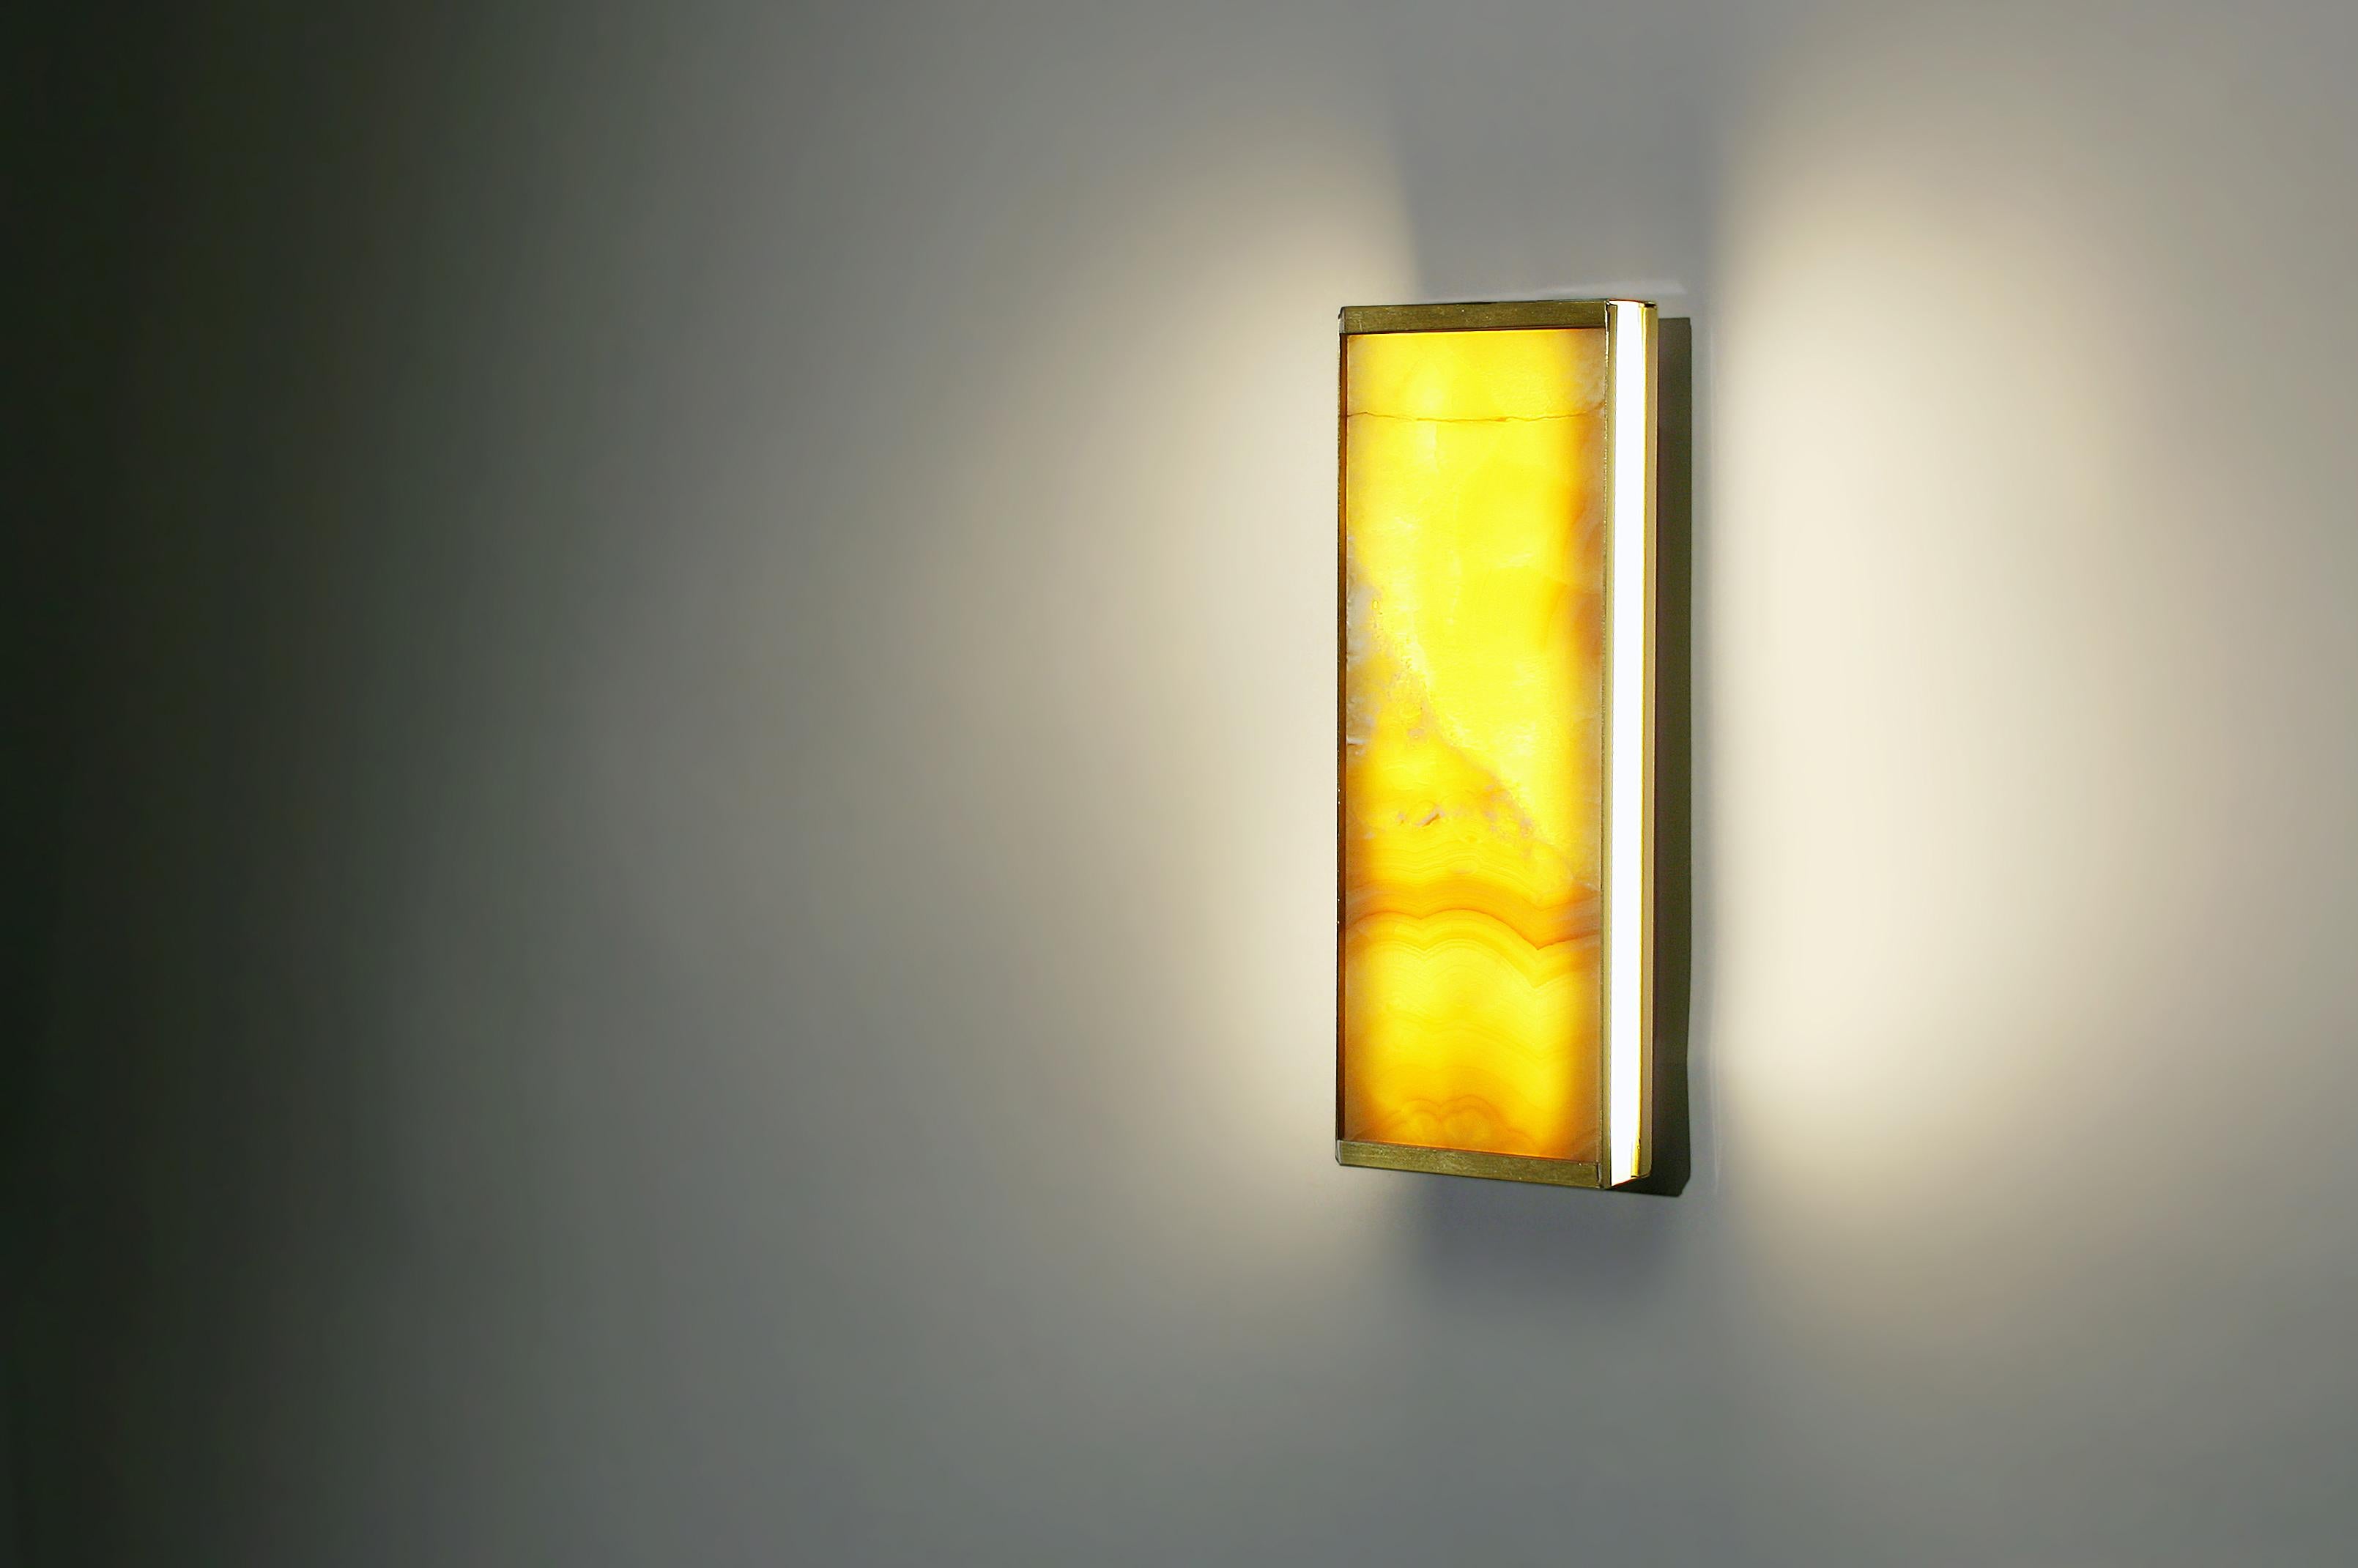 Die Tech Short Wall Sconce ist eine Leuchte, bei der Leuchte und Lampenschirm zu einer Einheit verschmelzen. Sie nutzt die lichtdurchlässigen Eigenschaften des hauchdünnen, geäderten gelben Onyx, um ein Wechselspiel von Licht und Schatten zu